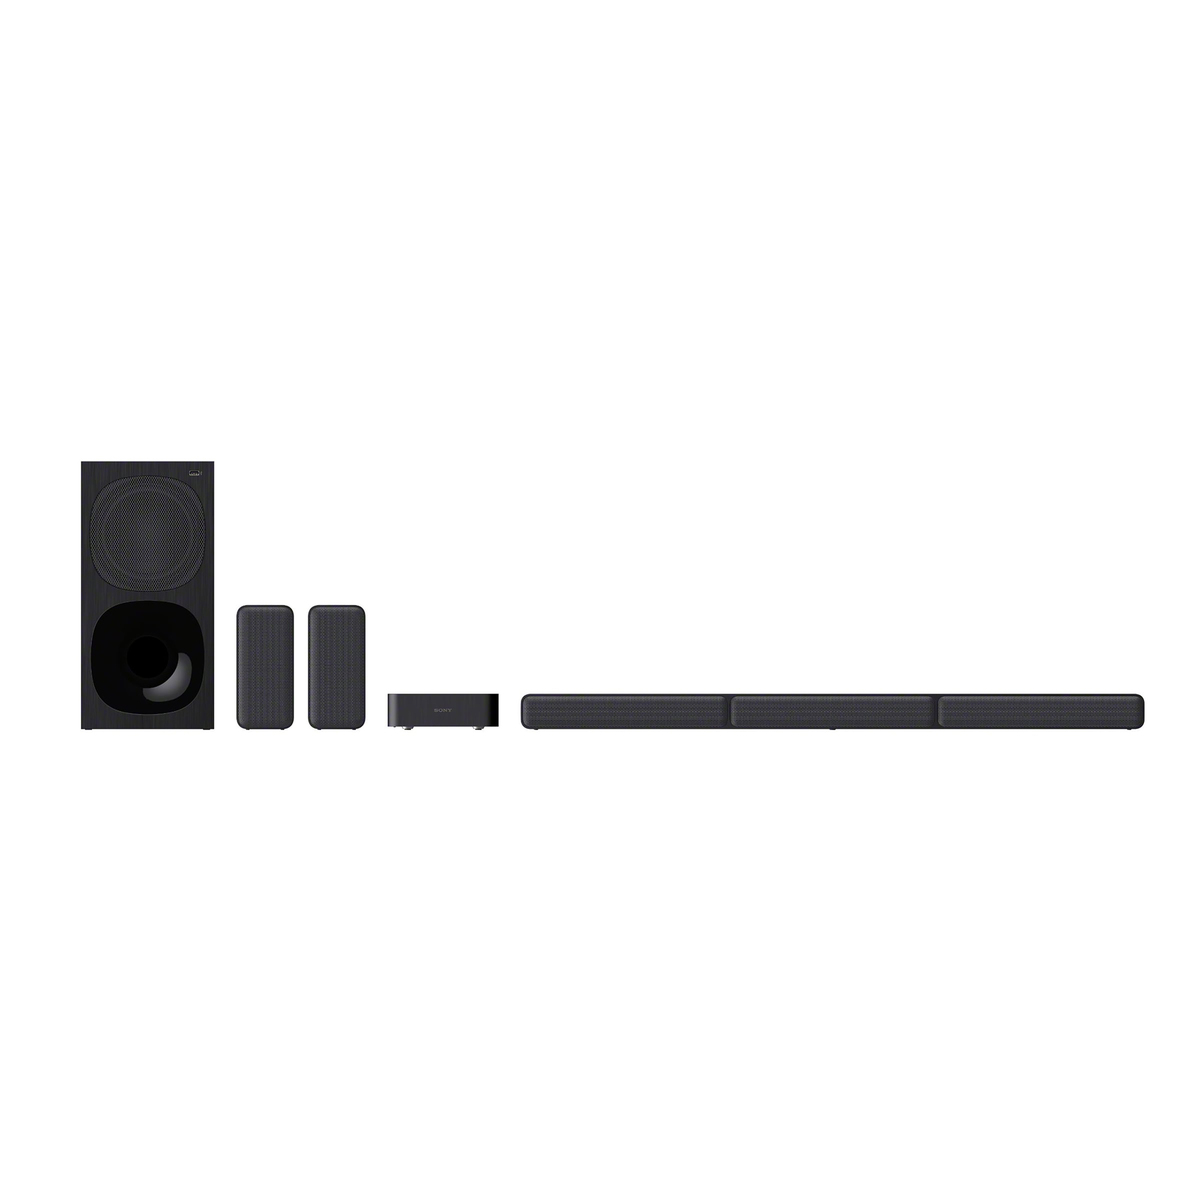 مكبر صوت سوني هوم سينما 5.1 قناة مع مكبرات صوت وايرلس خلفية - HT-S40R